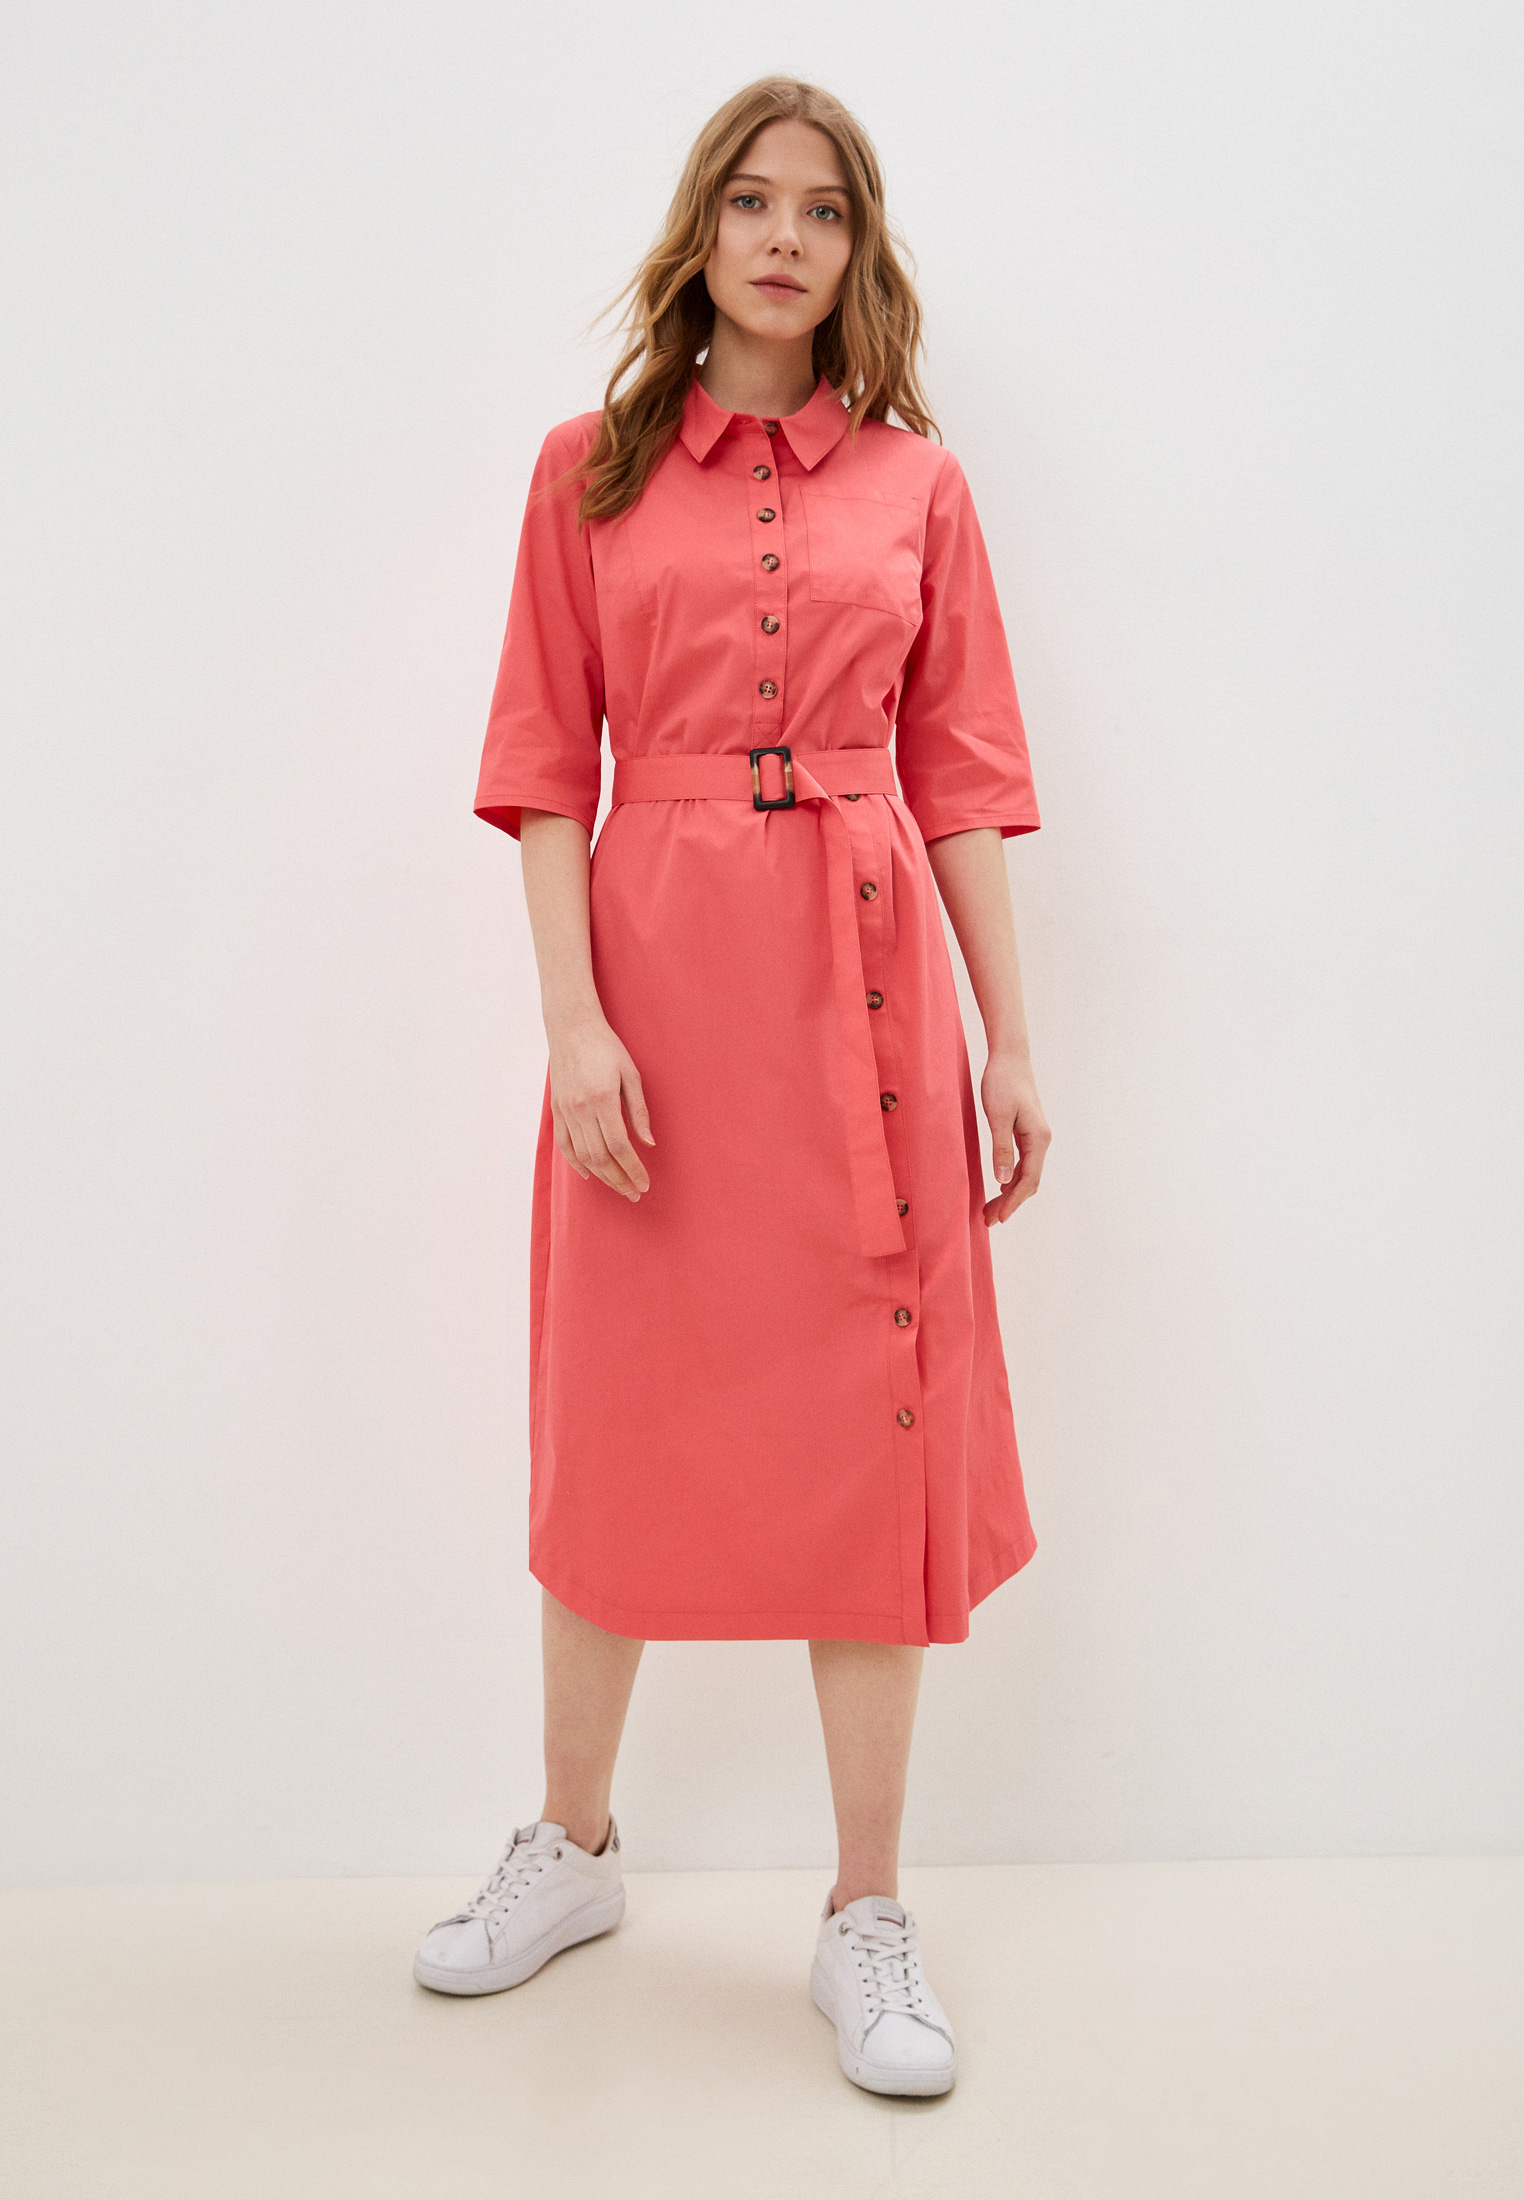 Платье Helmidge, цвет: розовый, MP002XW0CMJ5 — купить в интернет-магазине Lamoda